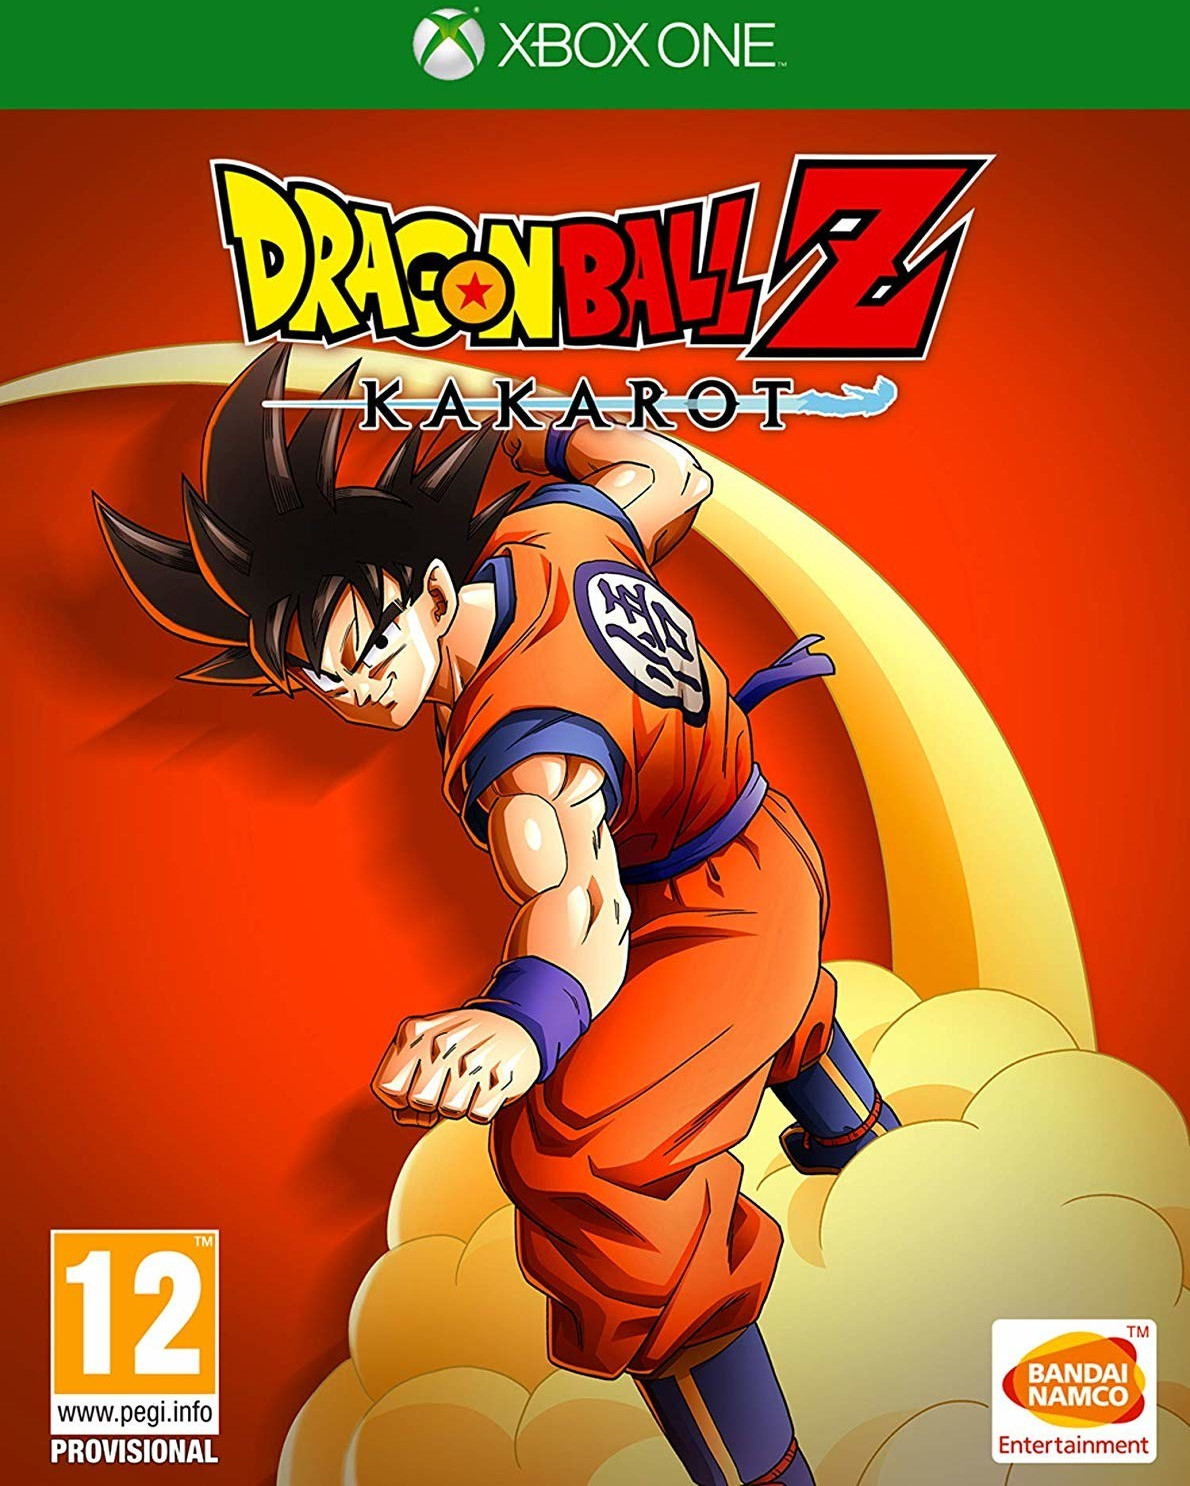 Photos - Game Microsoft Bandai Namco  Dragon Ball Z: Kakarot  (Xbox One)